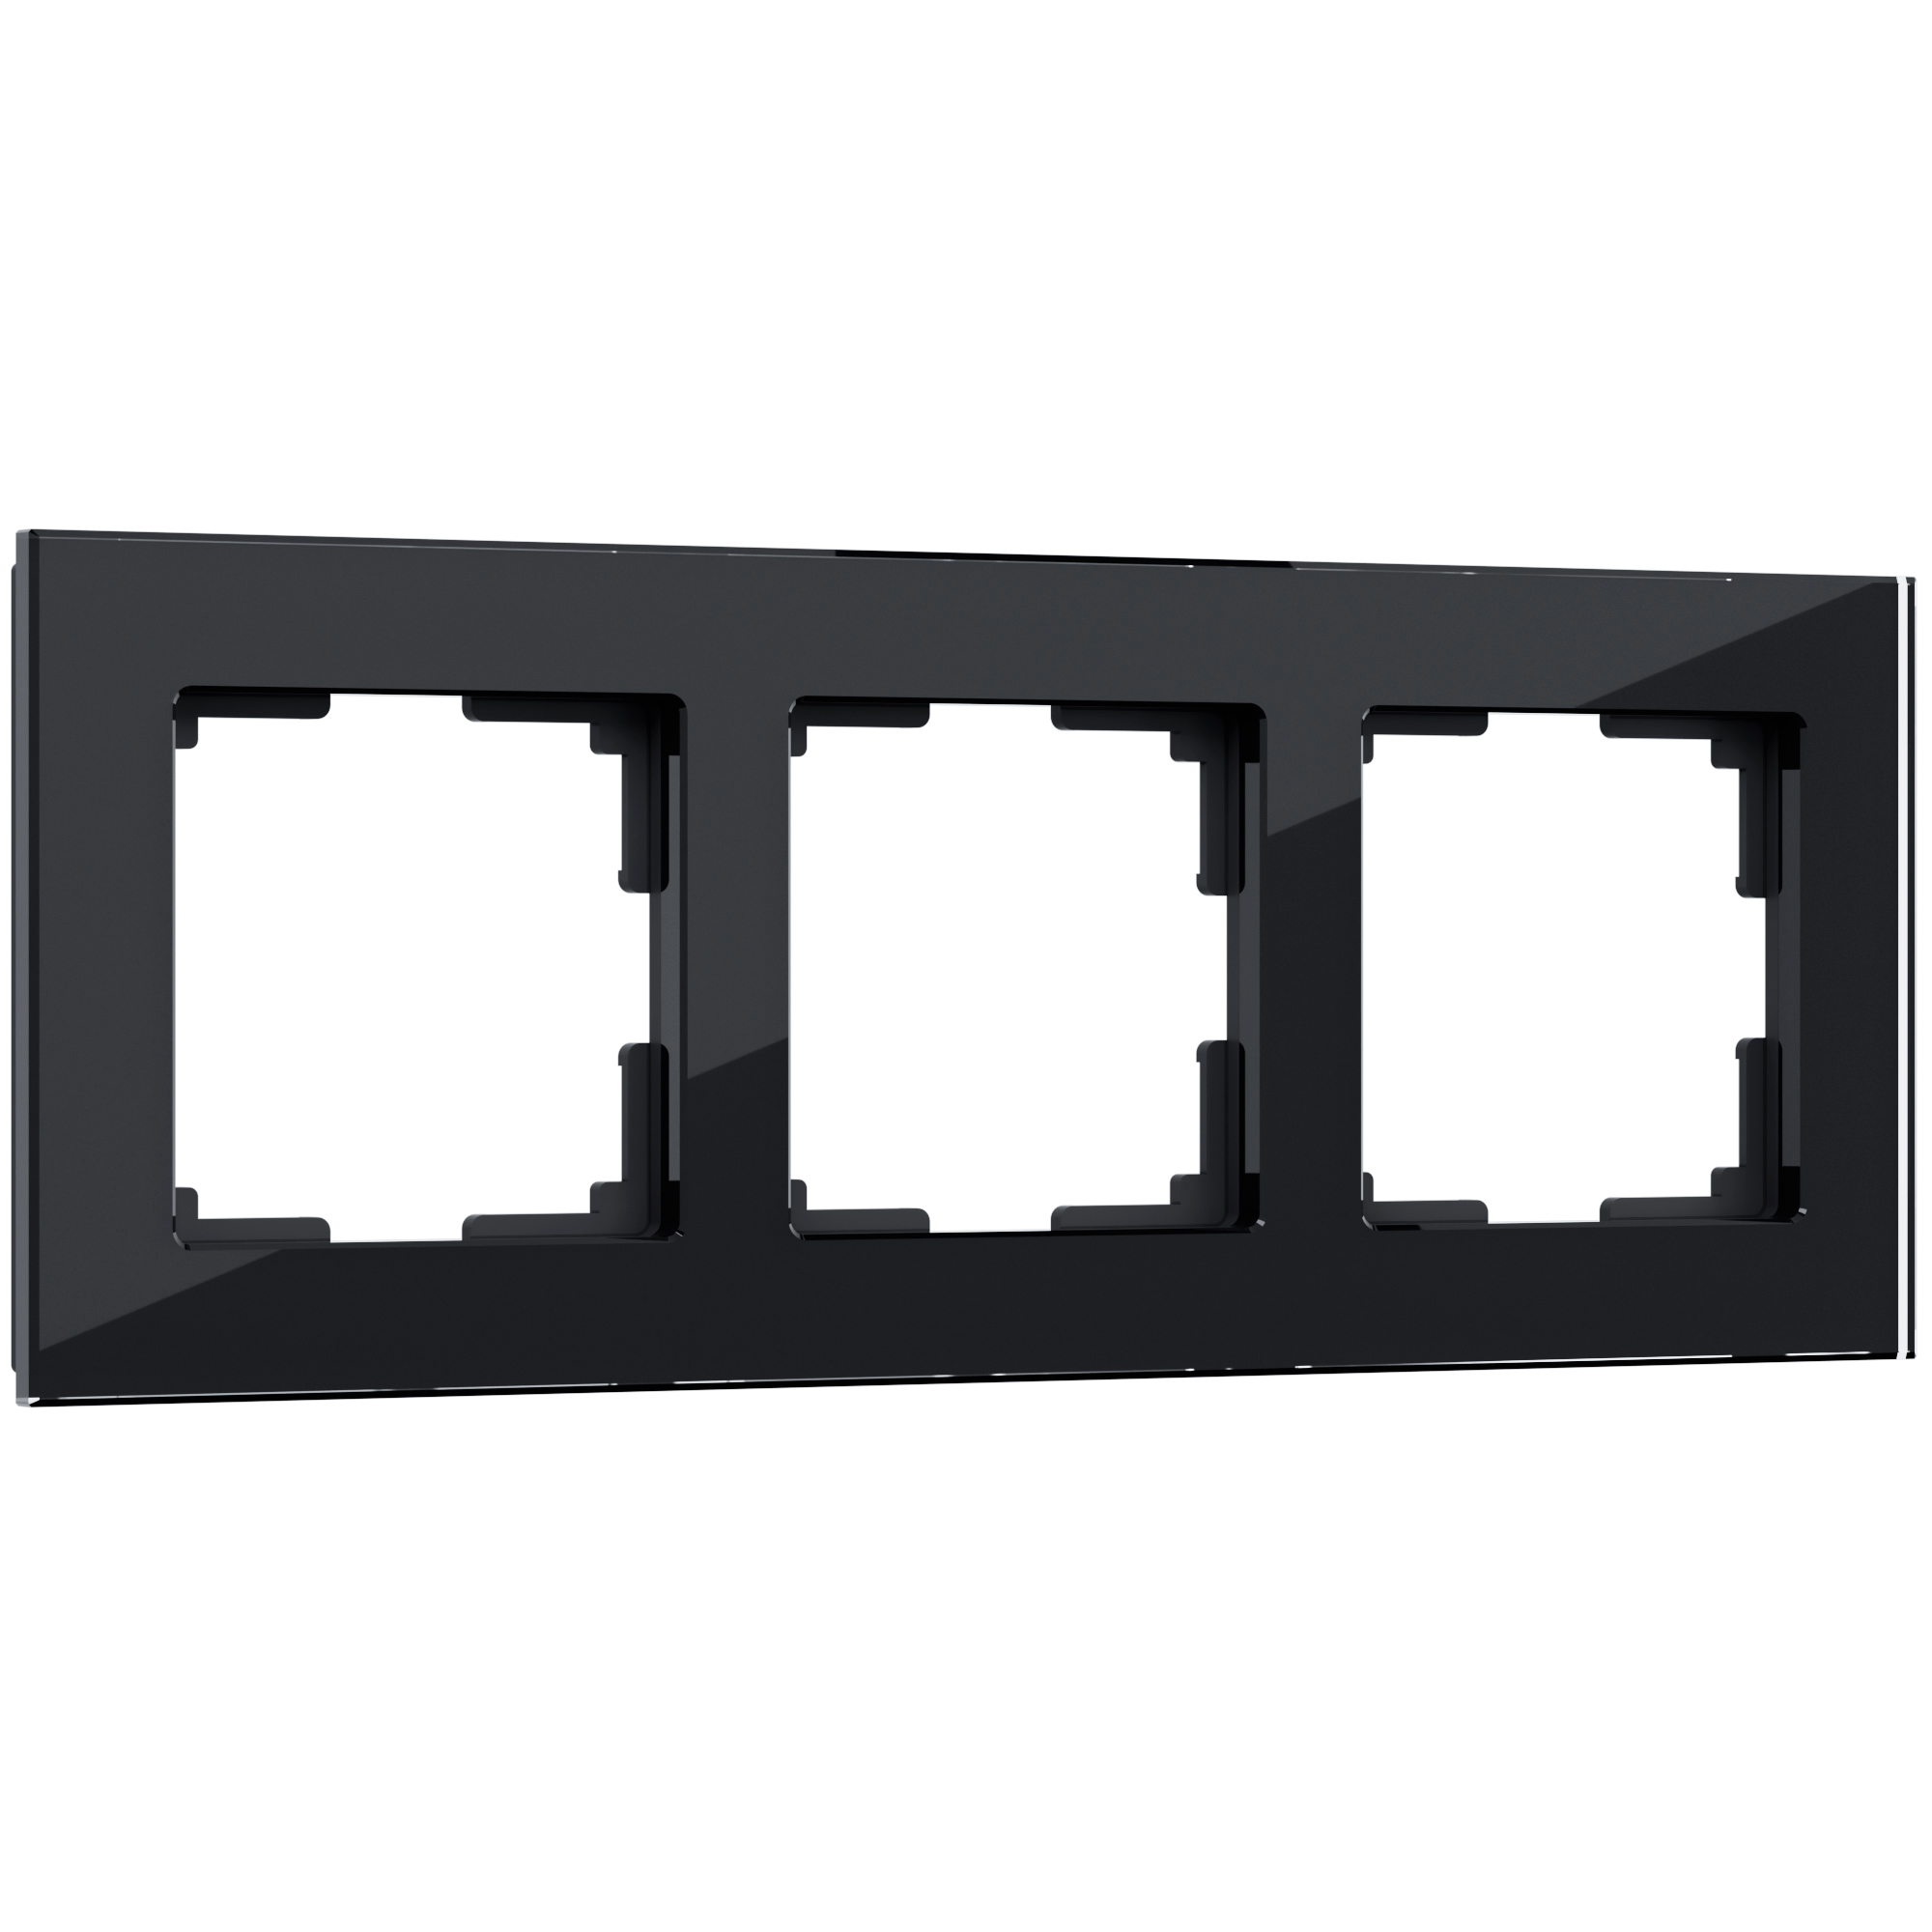 Рамка для розетки / выключателяна 3 поста Werkel  W0031108 Favorit черный стекло рамка на 4 поста werkel favorit w0041141 4690389183447